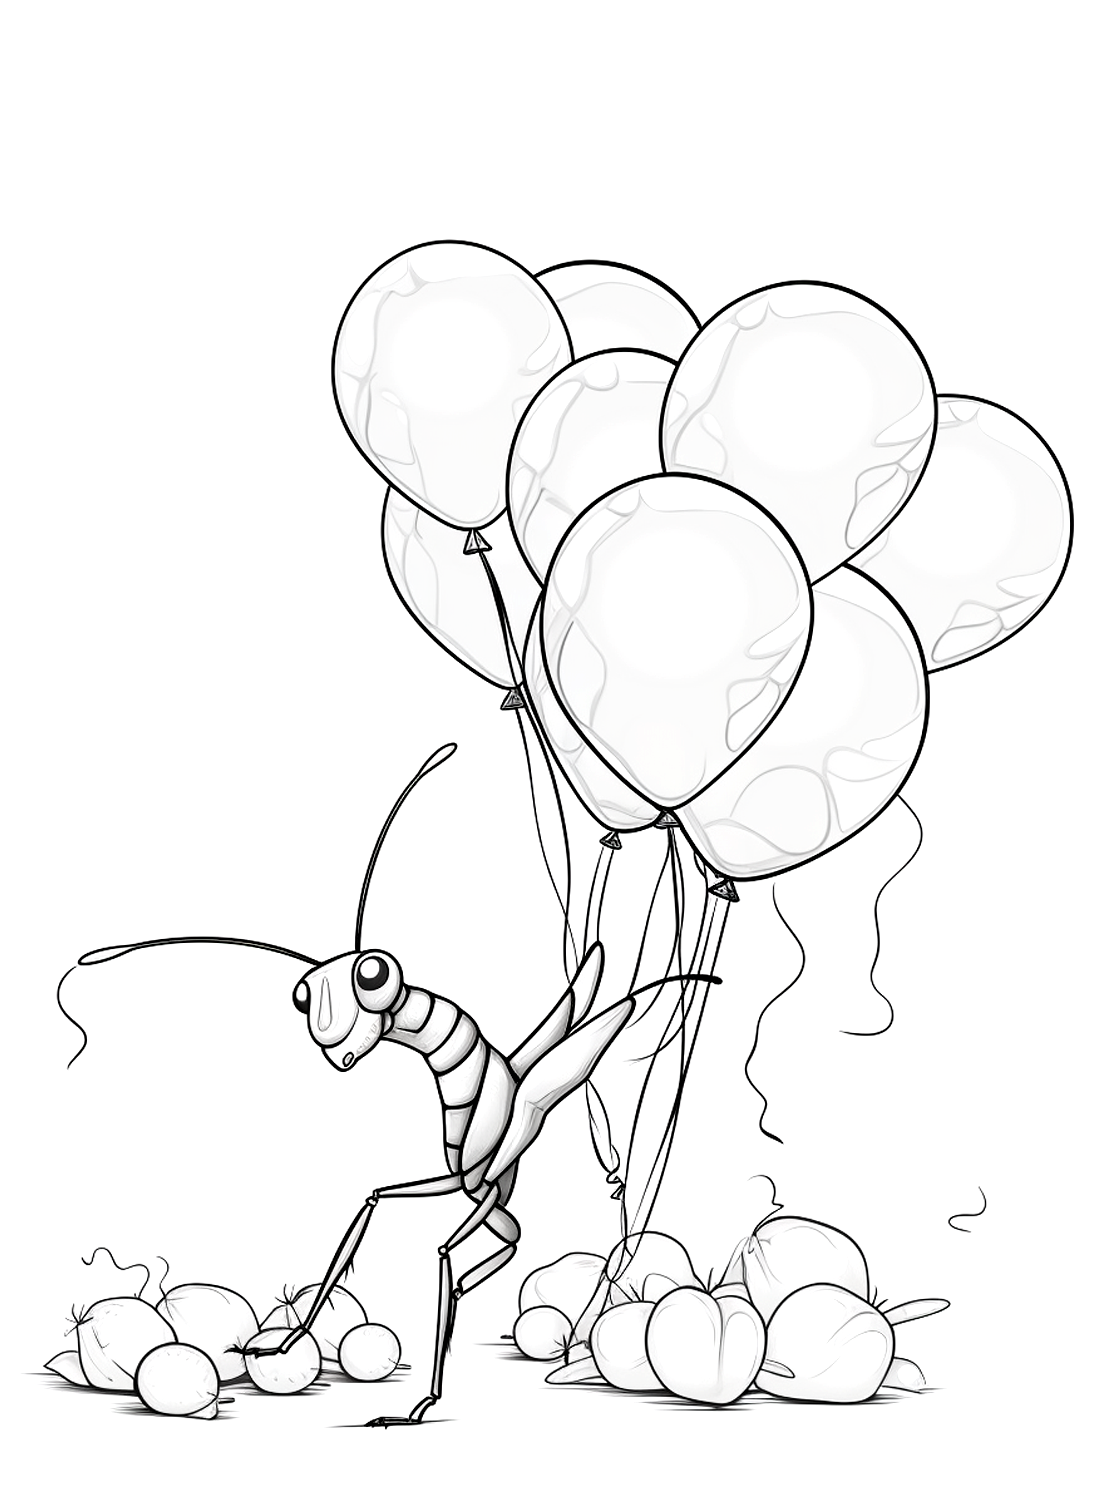 Богомол забирает у богомола много воздушных шаров.